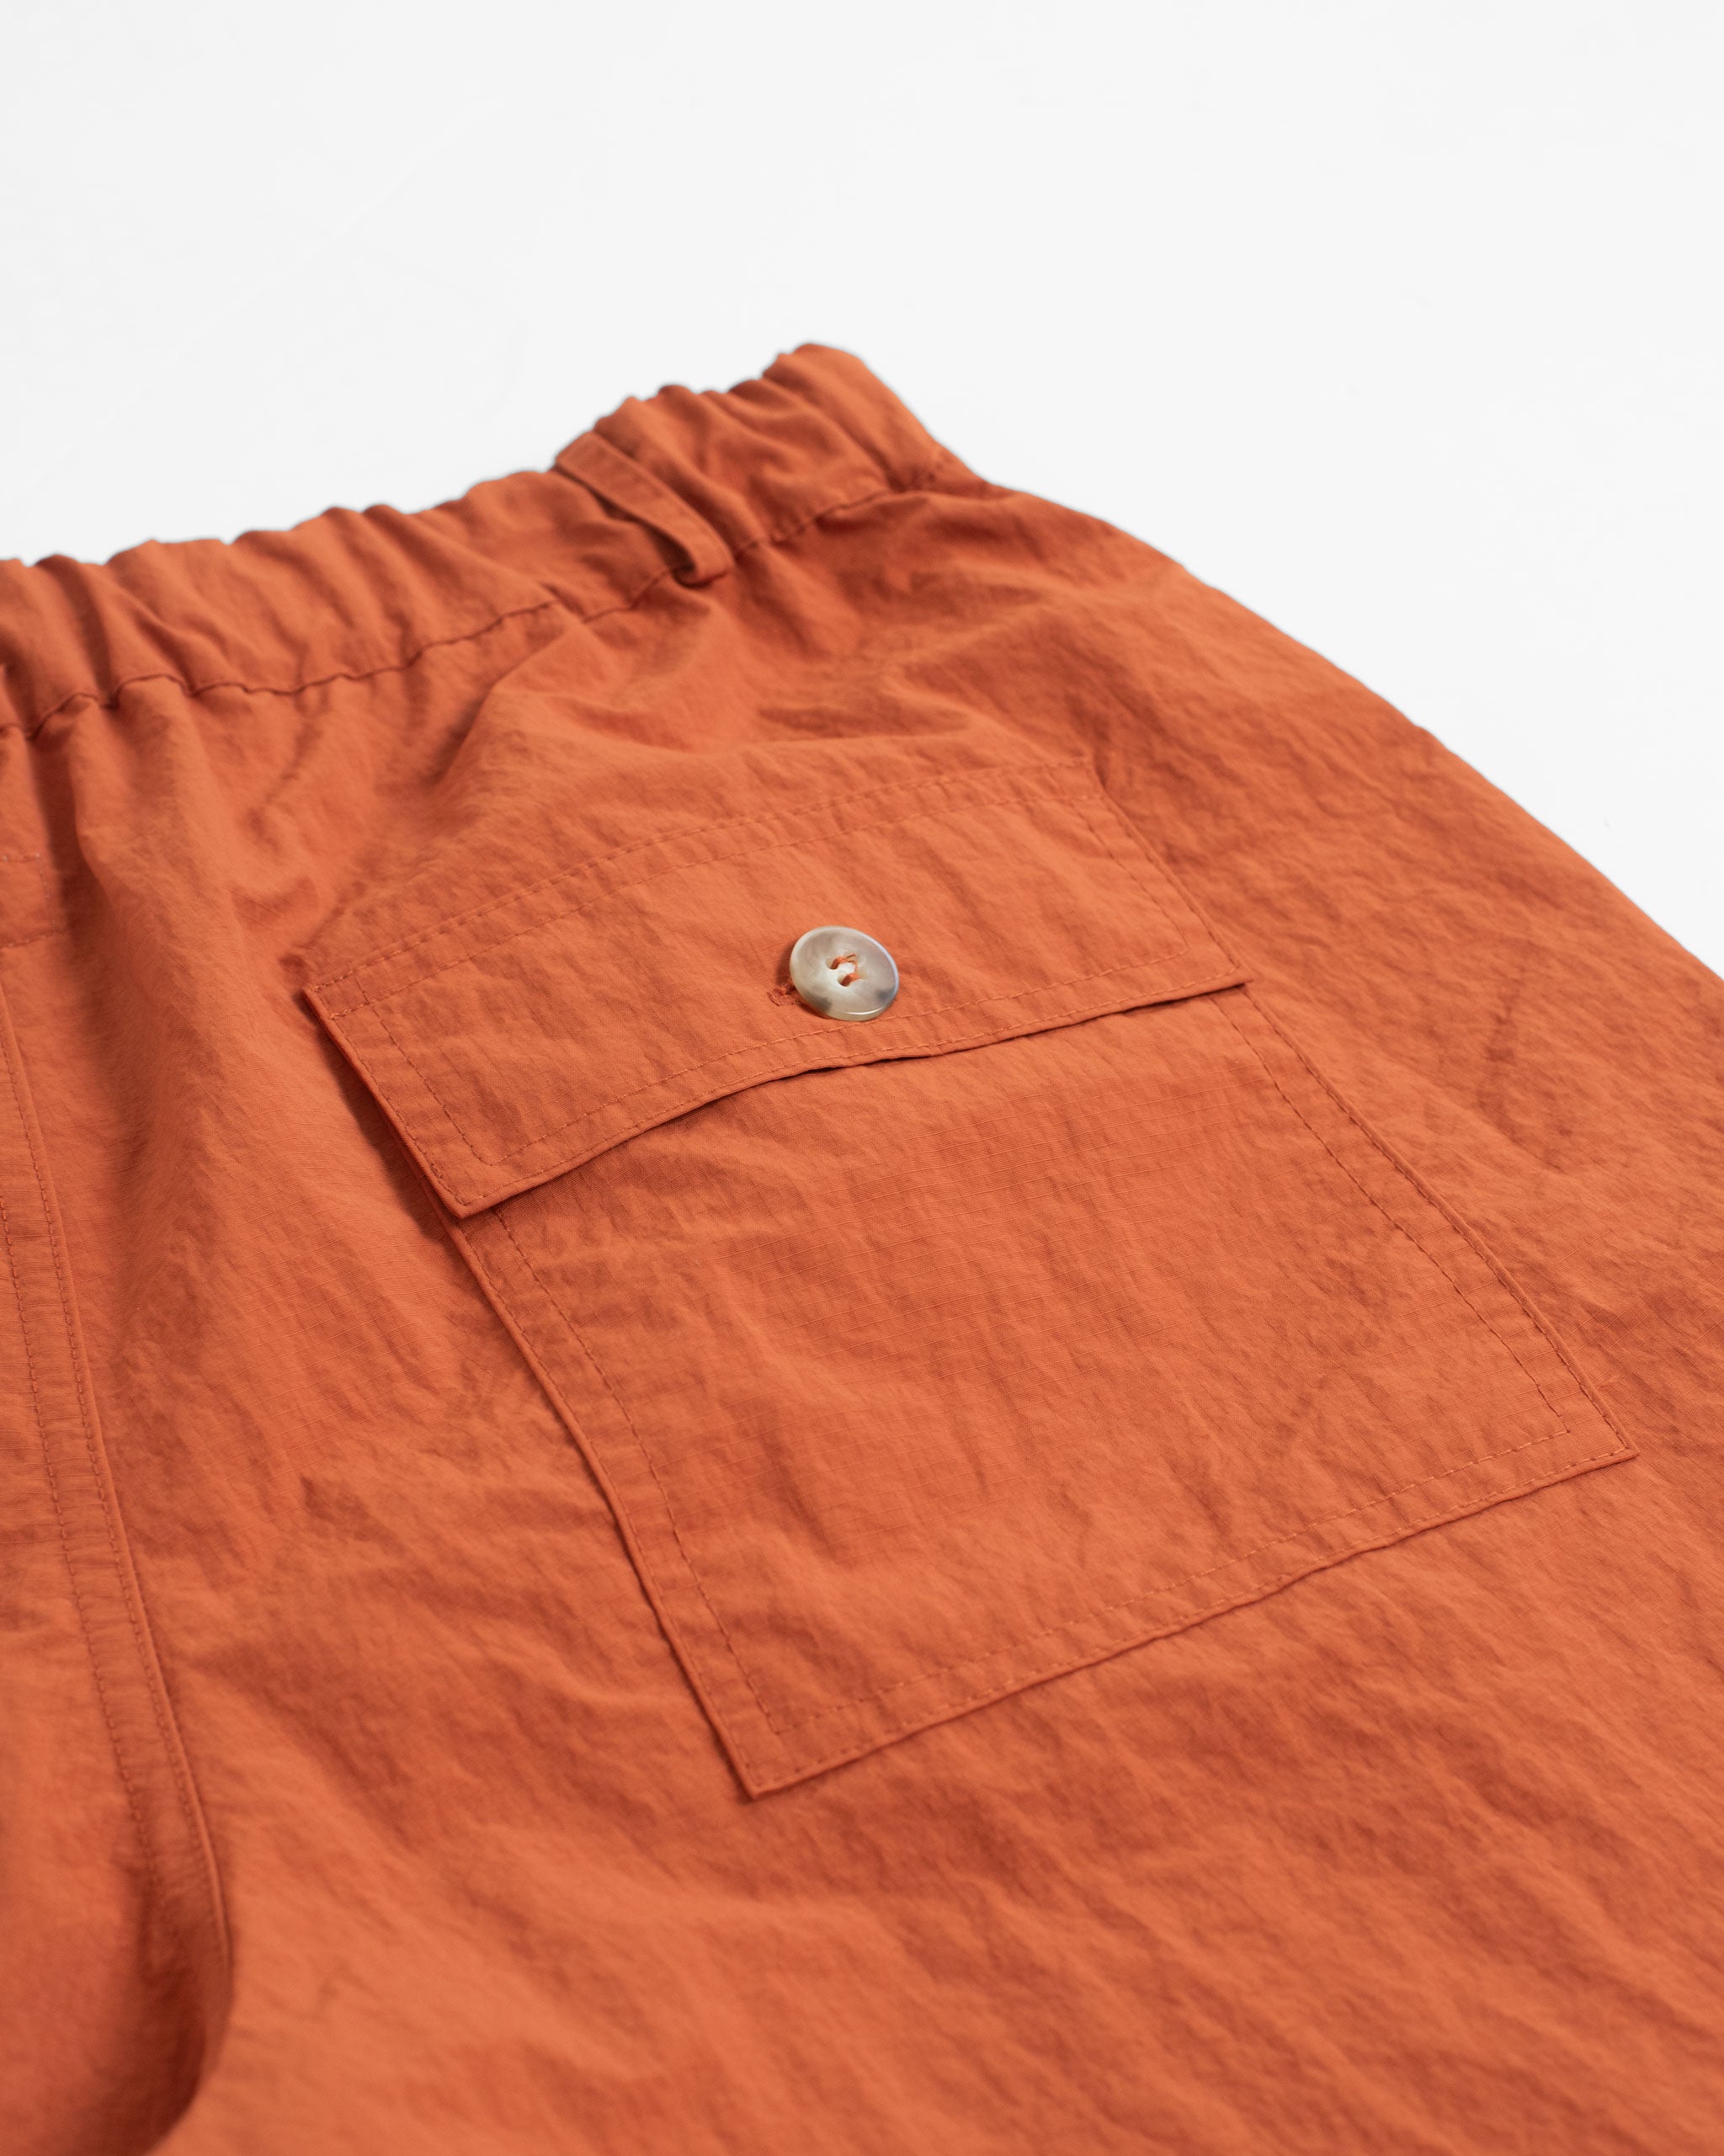 Back pocket close up of Solid Orange nylon utility shorts